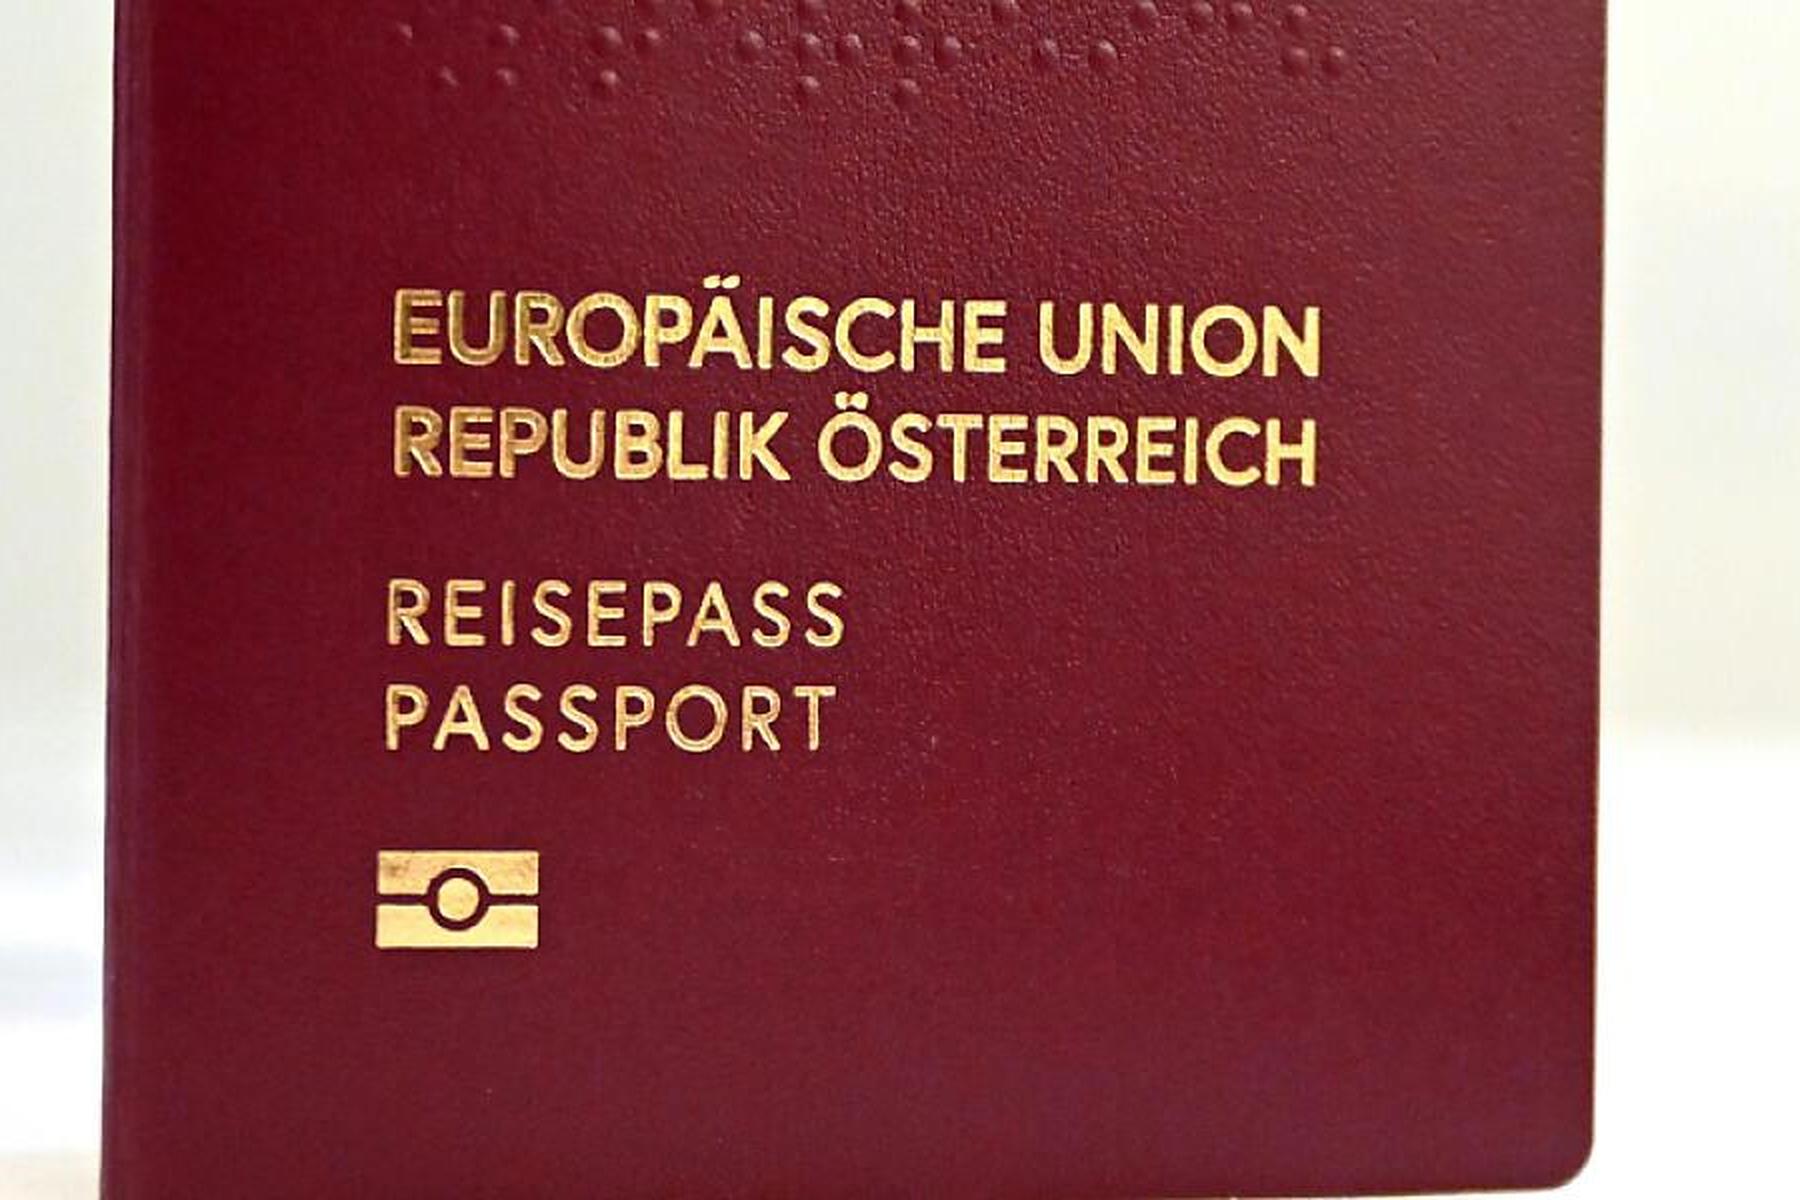 Wien: Reisepass und Führerschein werden nicht teurer